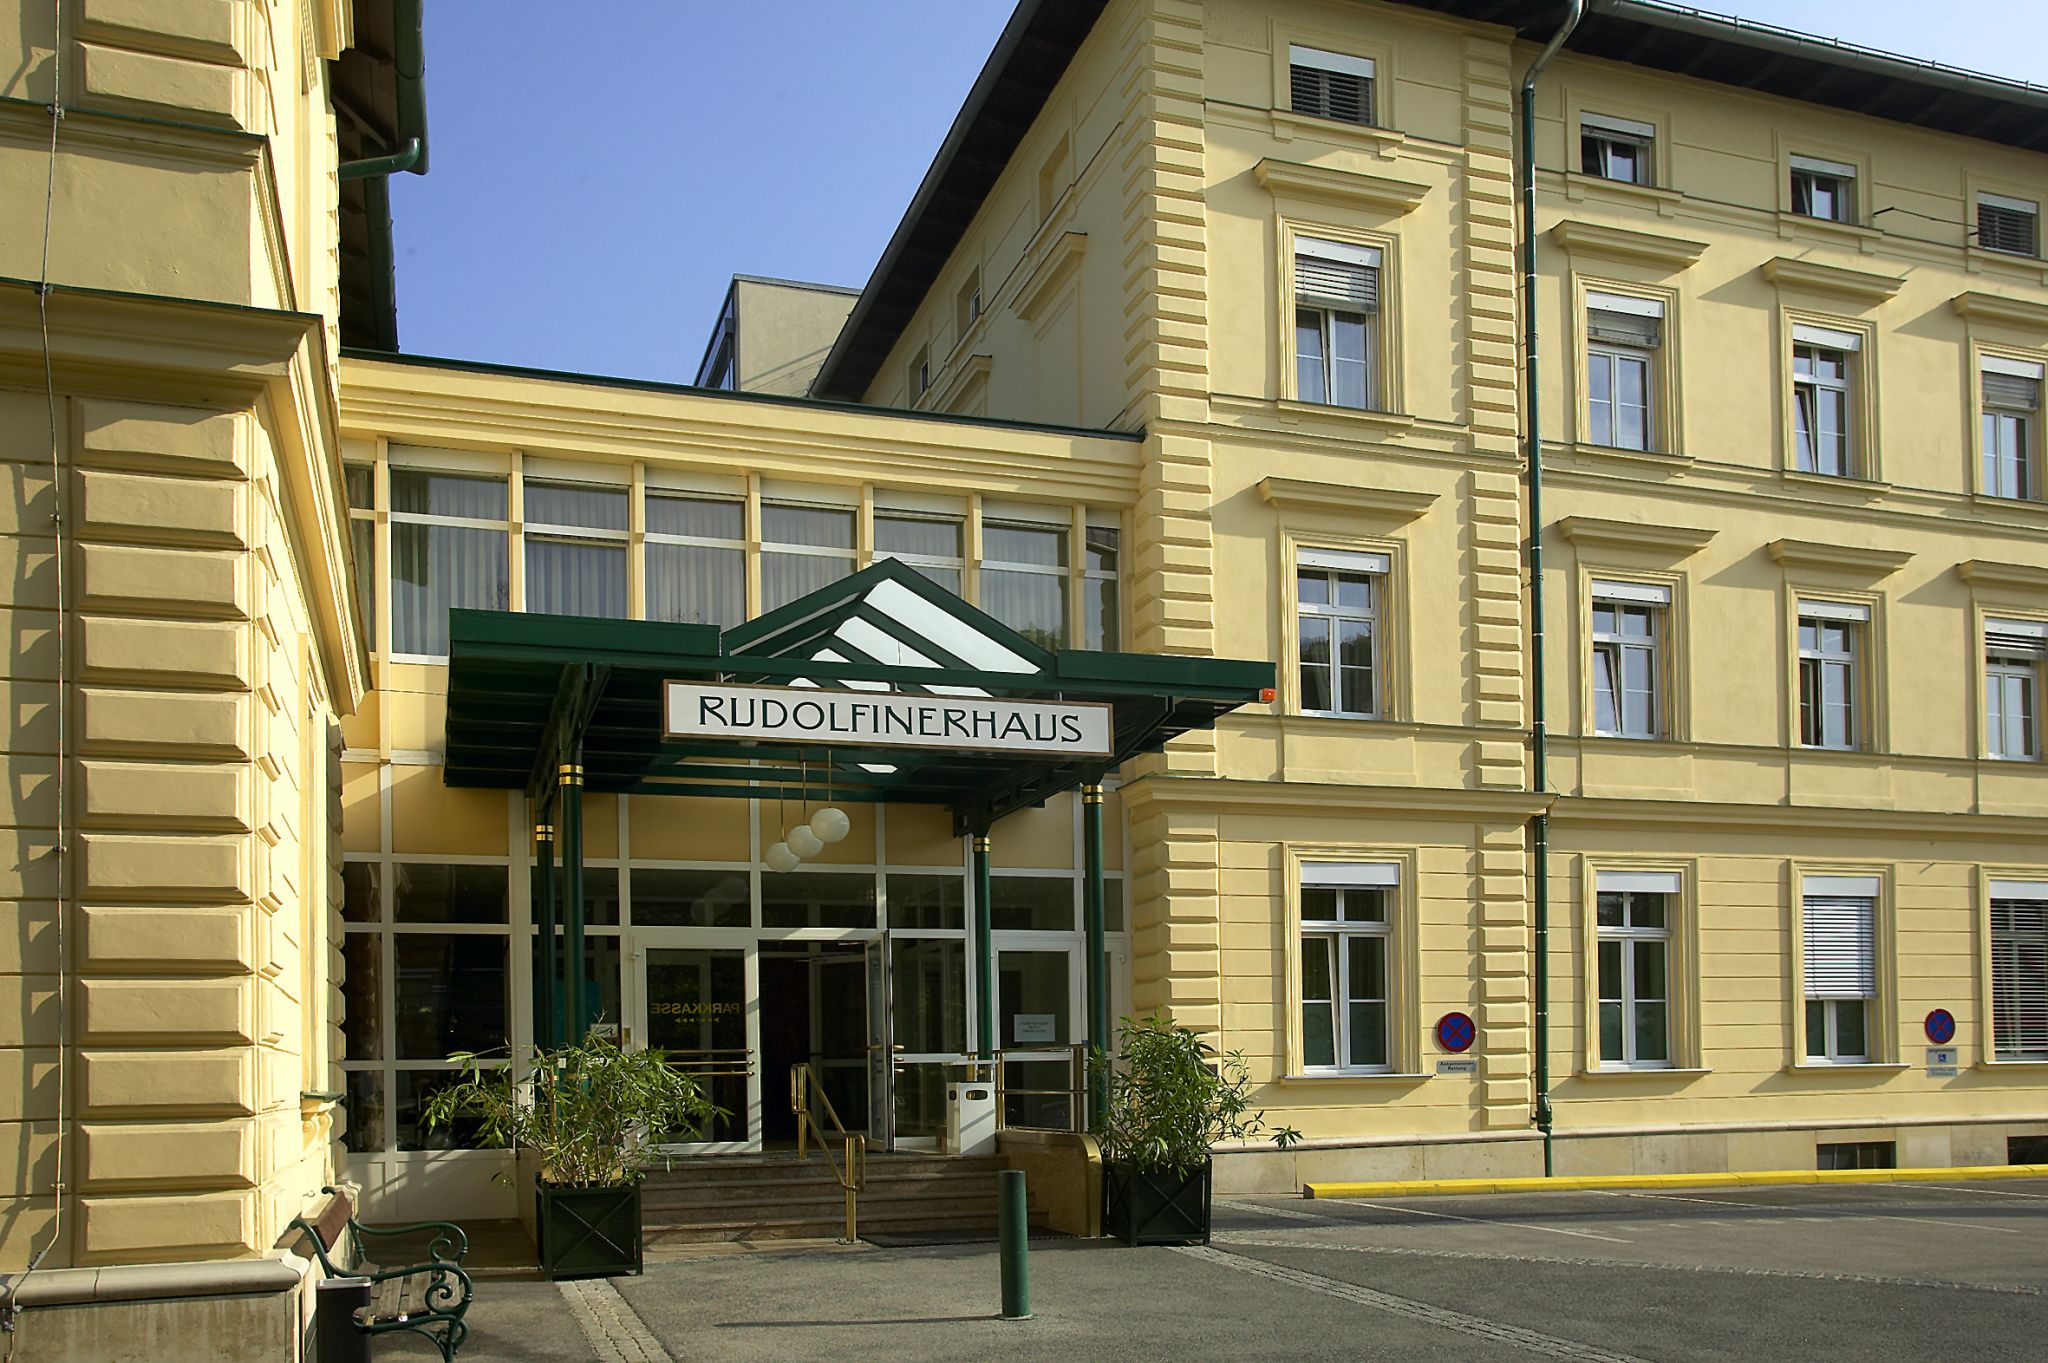 Private clinic Rudolfinerhaus